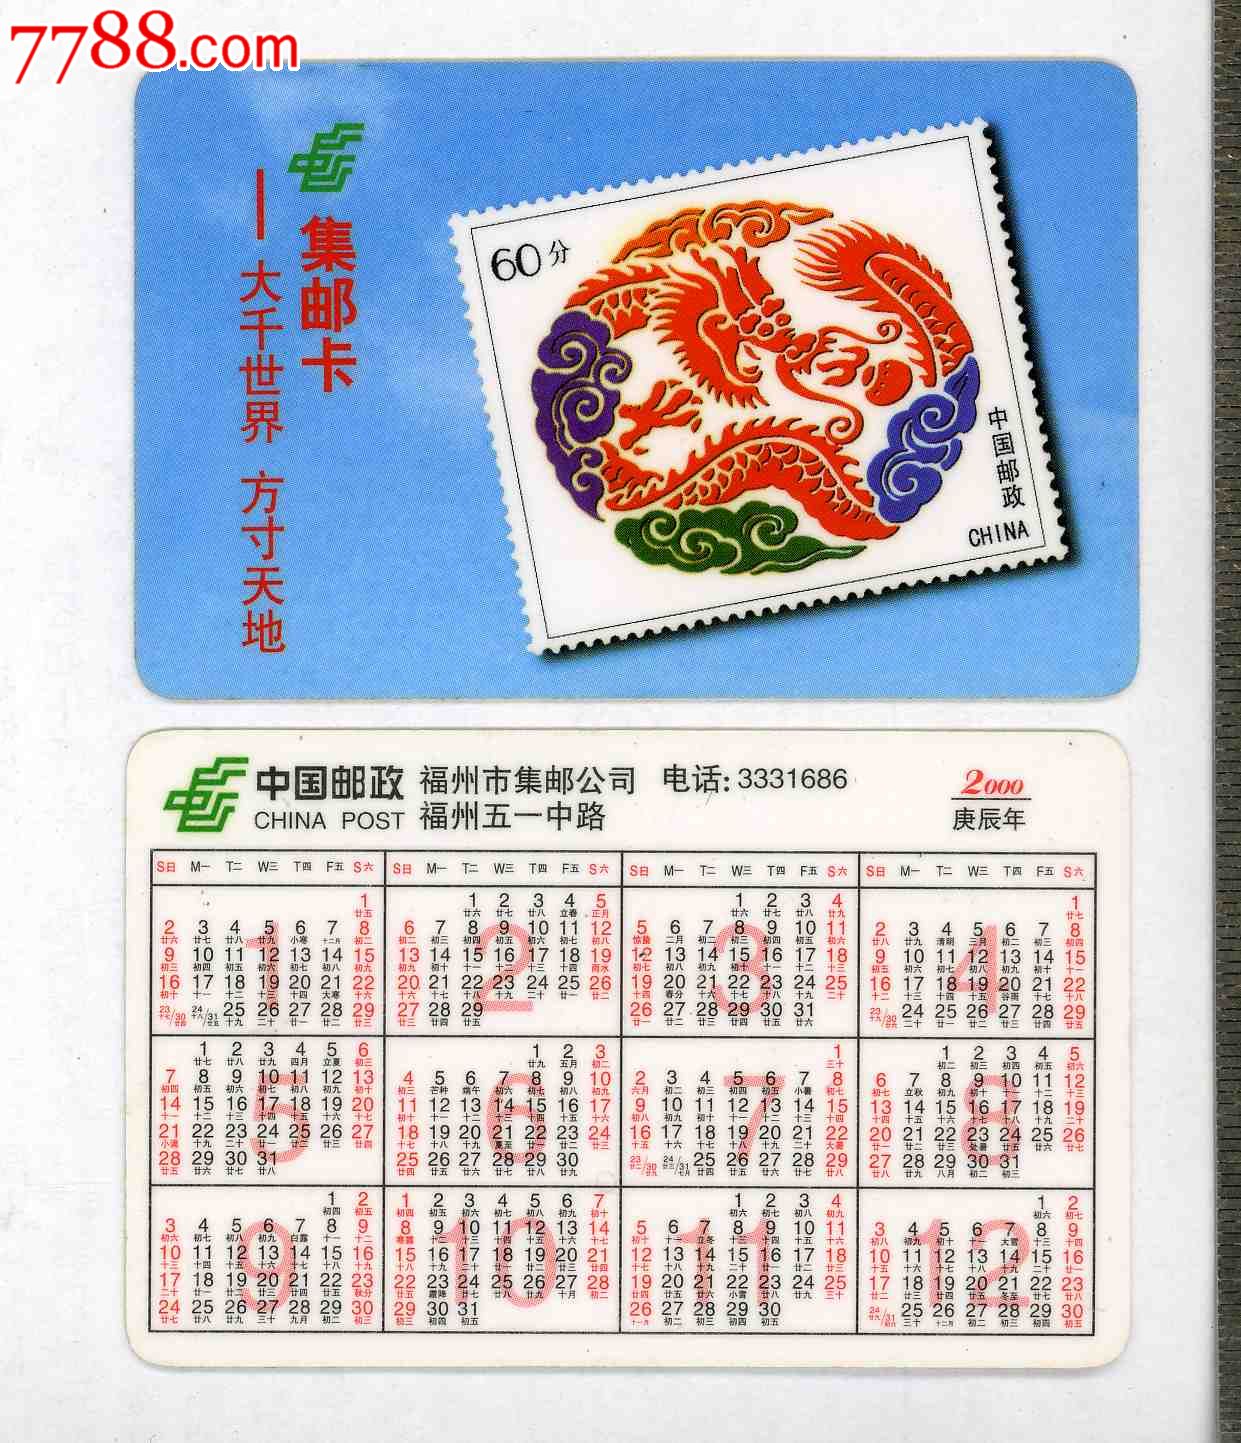 中国邮政*福州市集邮公司*2000年历卡